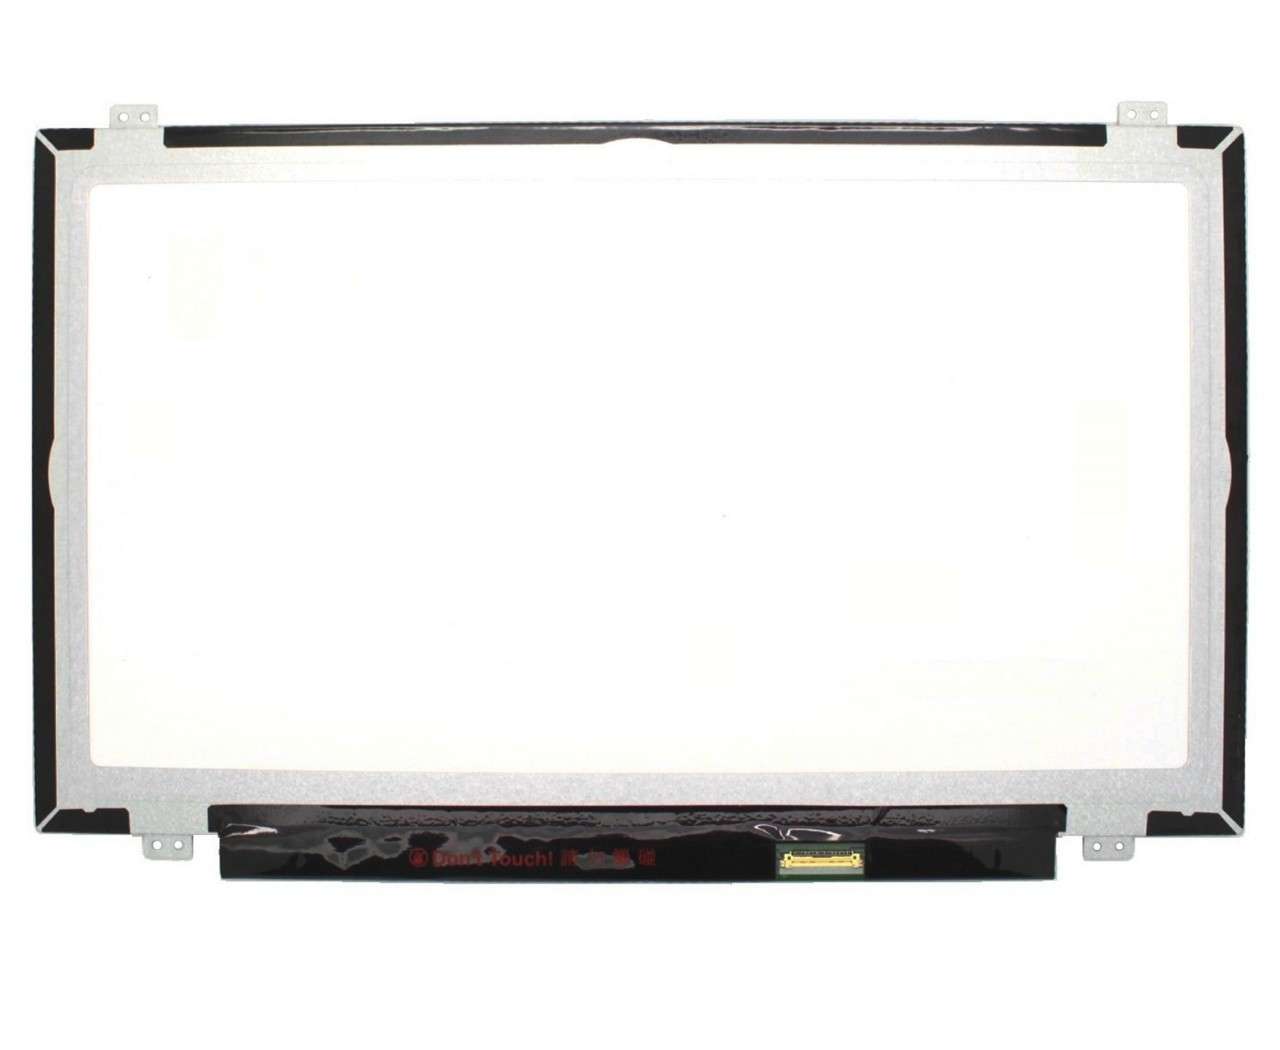 Display laptop BOE N140HGE-EA1 Ecran 14.0 1920×1080 30 pini eDP imagine 2021 BOE